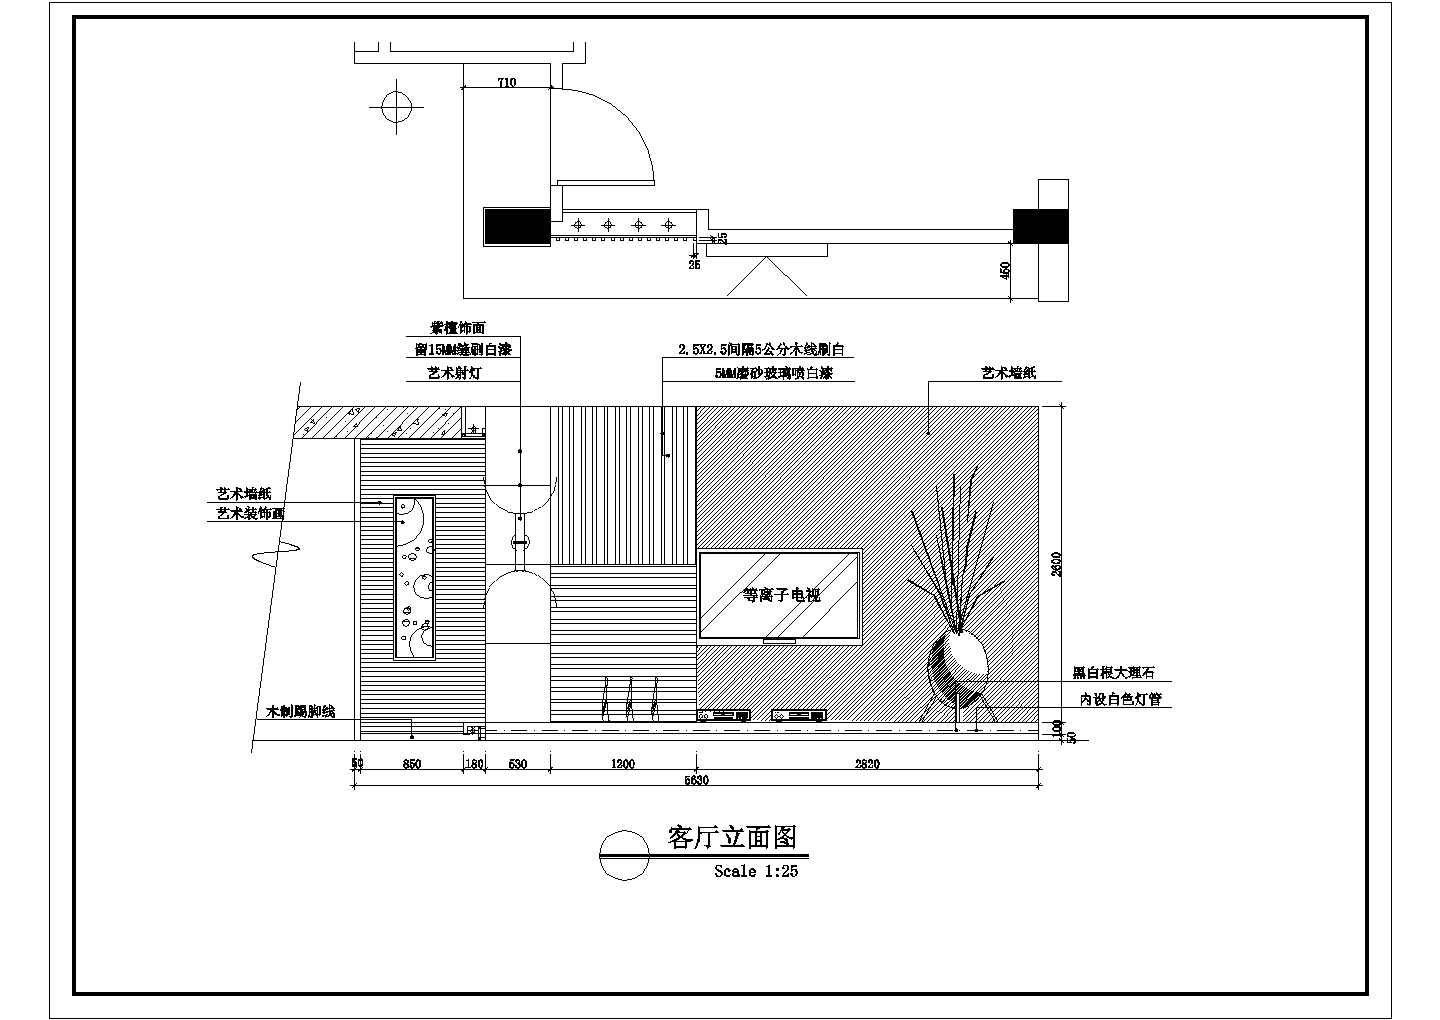 丰泽花园吕氏家居住宅楼全套装修施工设计cad图(含顶面布置图)